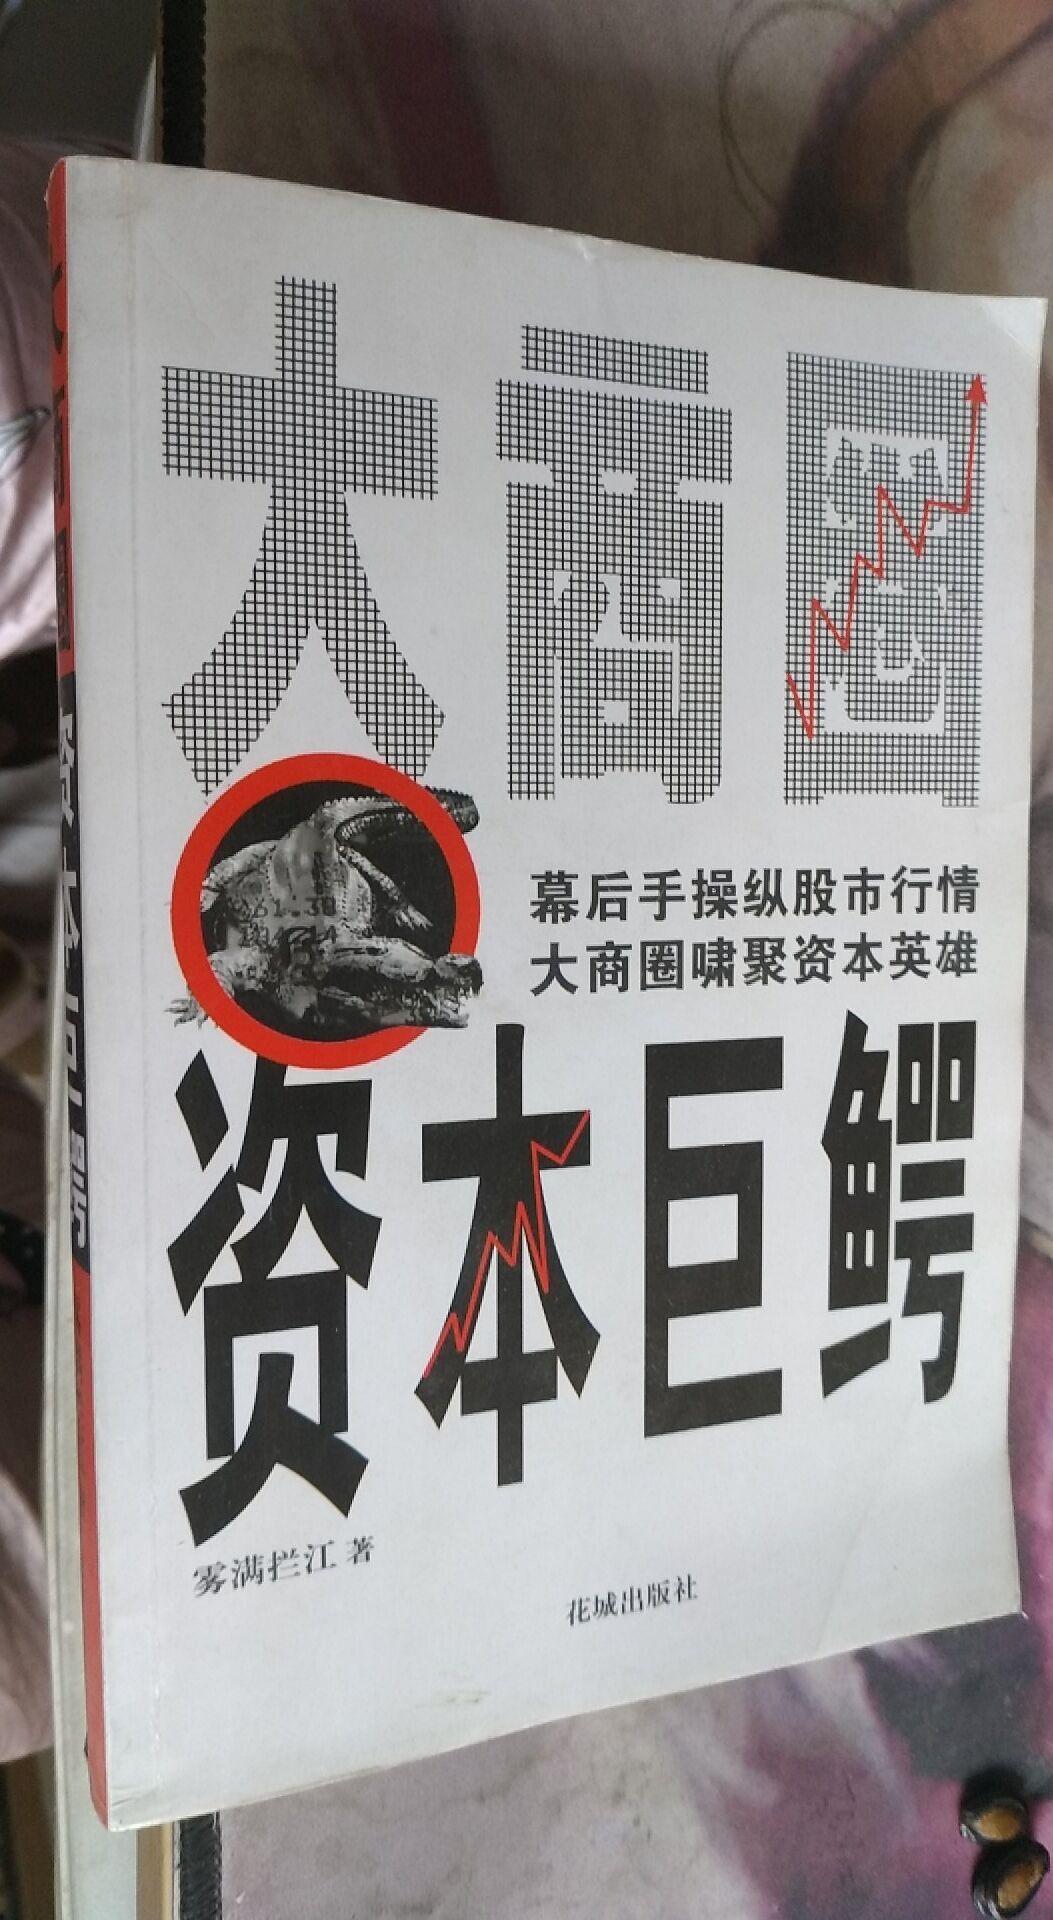 大商圈·资本巨鳄 雾满拦江 著 / 花城出版社 / 2004-05 / 平装